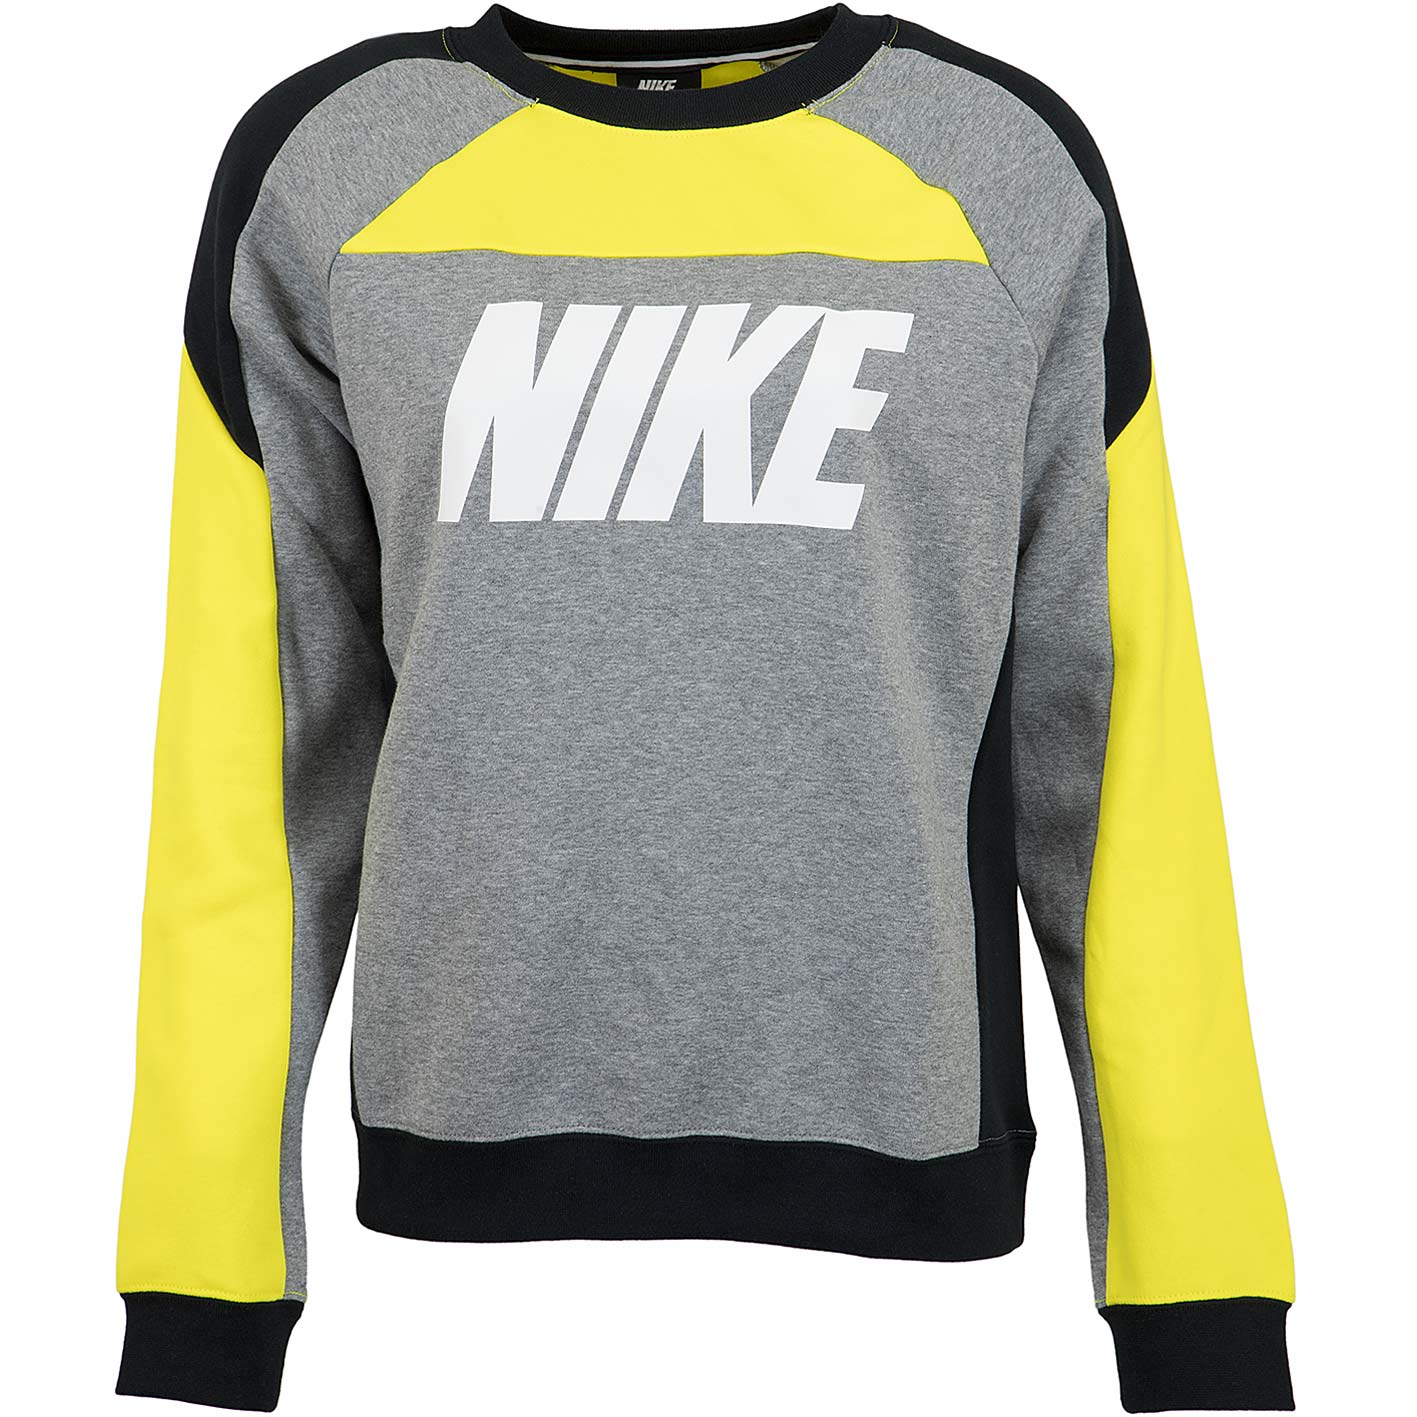 ☆ Nike Damen Sweatshirt CB Fleece gelb/grau - hier bestellen!